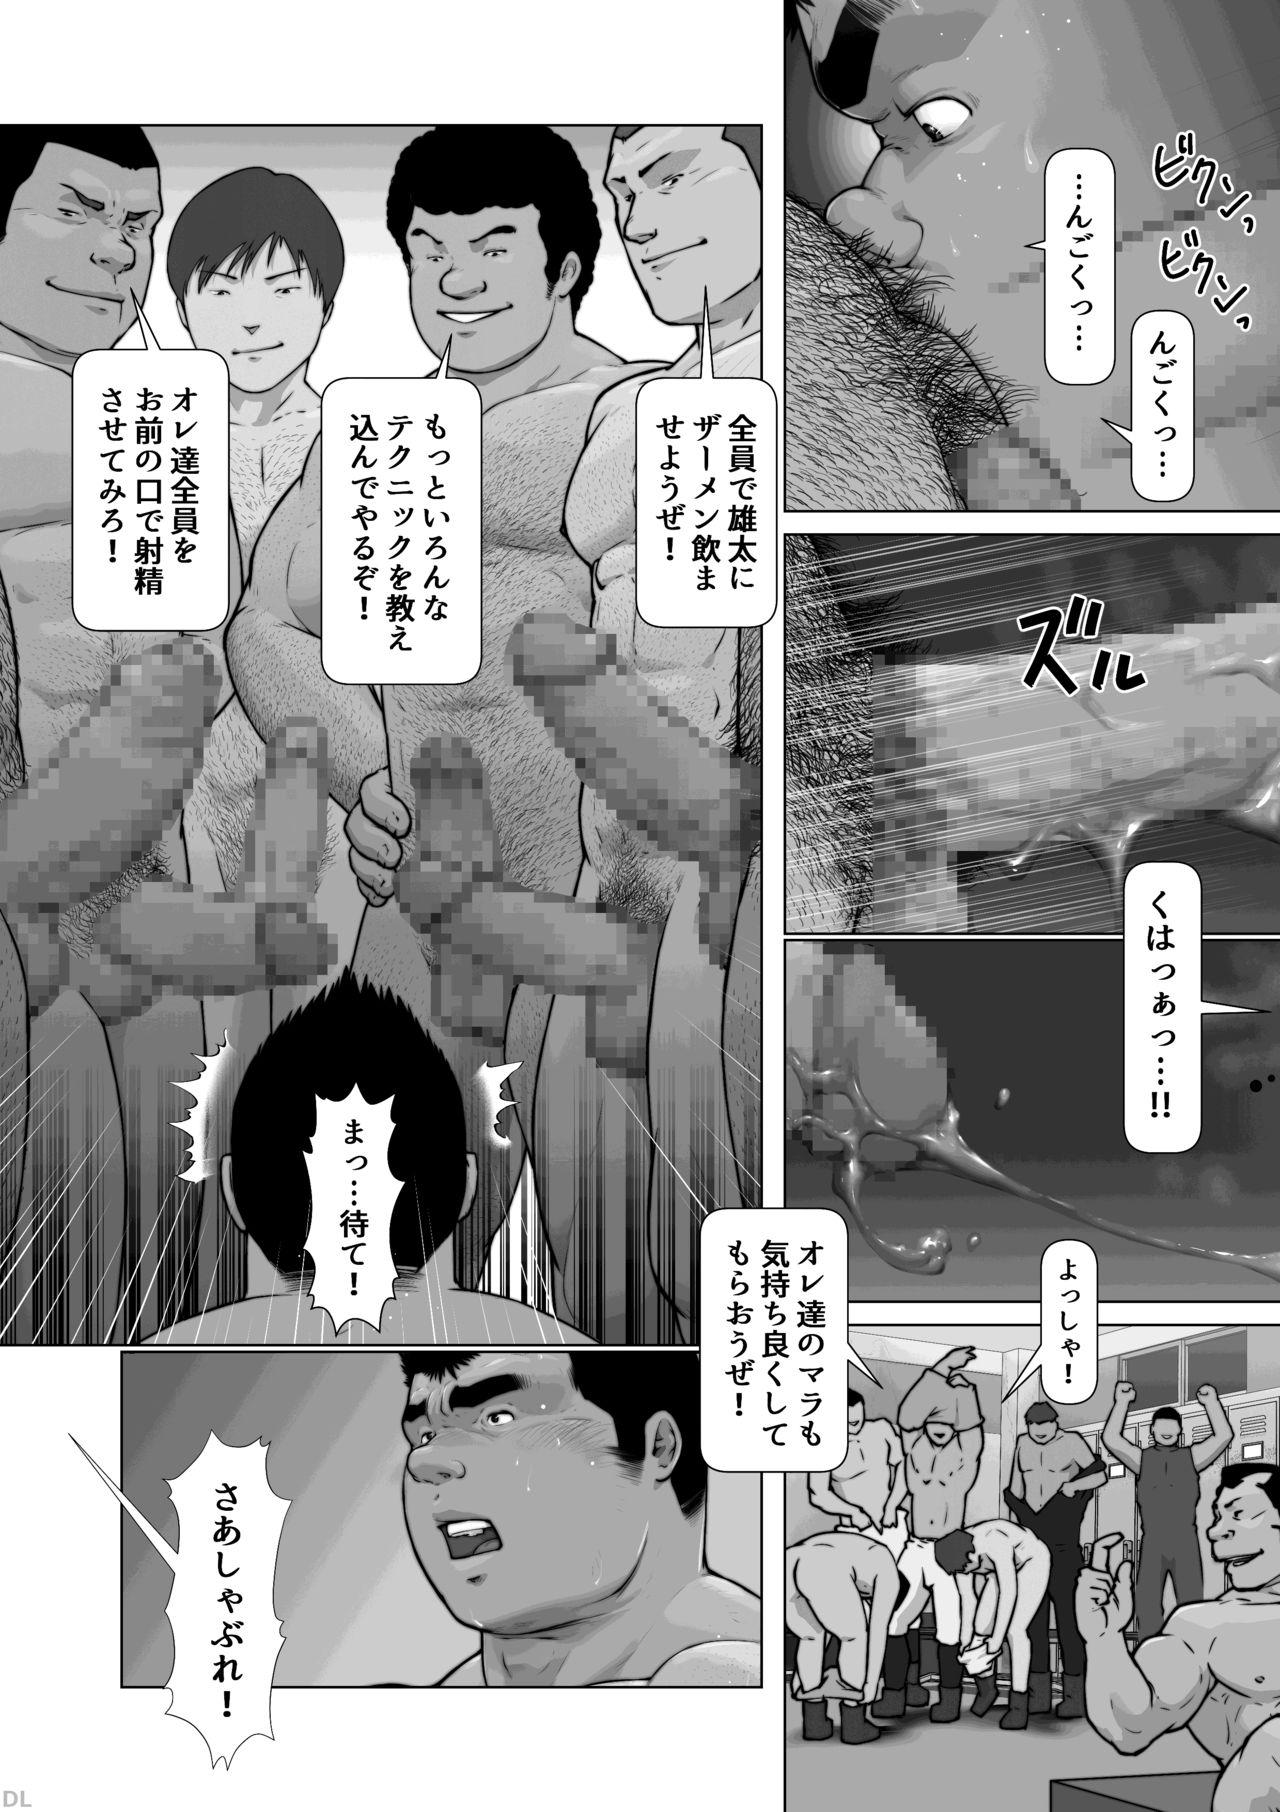 [frontierkiss (Kai Makoto)] Nanji no Teki o Aise Zenpen: Osuinu Dorei Shiiku Monogatari Dai 2-shou 2-wa (22a) [Digital] 12